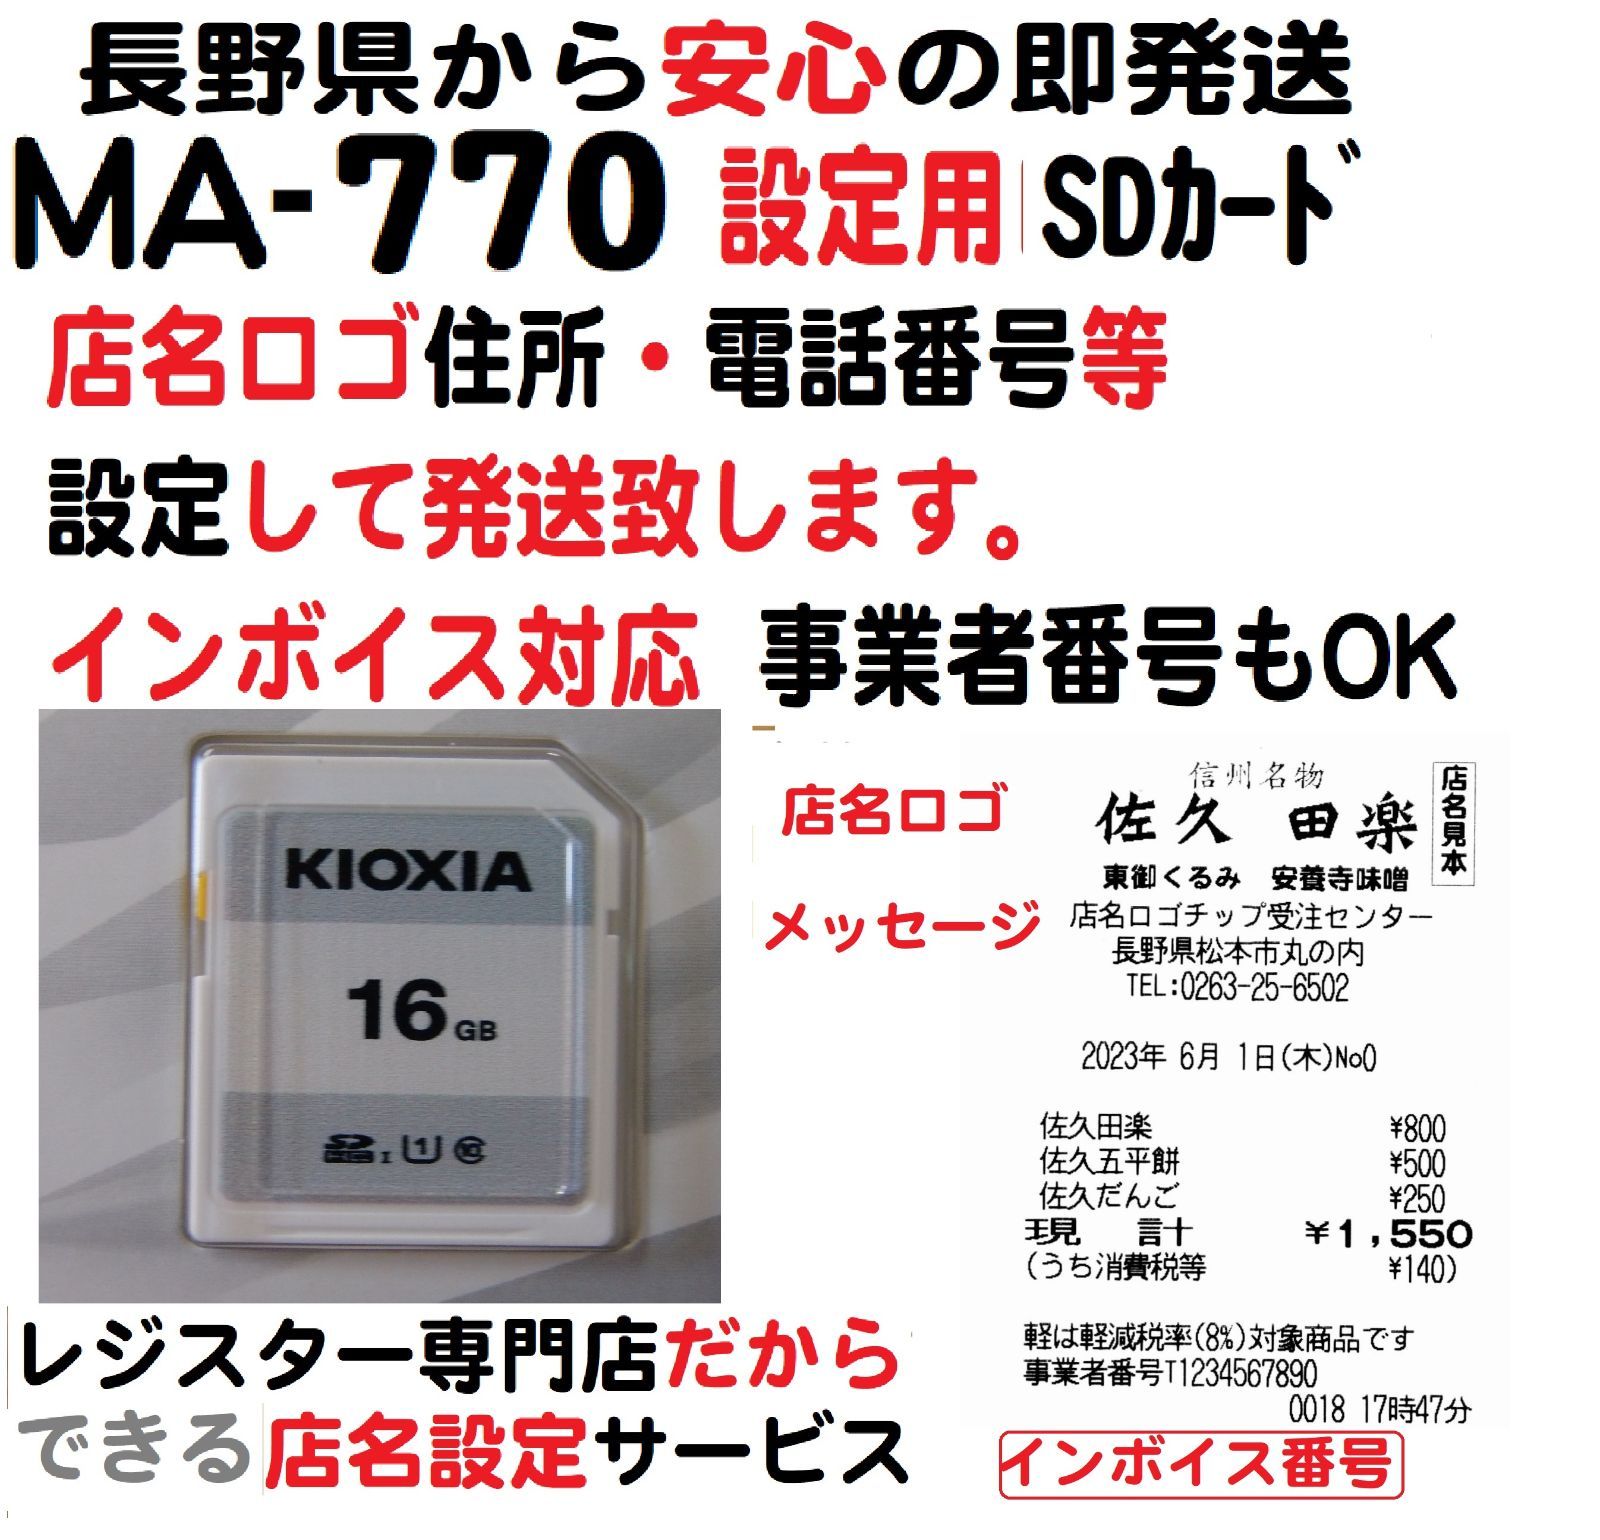 東芝テック MA-770レジスター店名設定 SDカードインボイス - 店舗用品